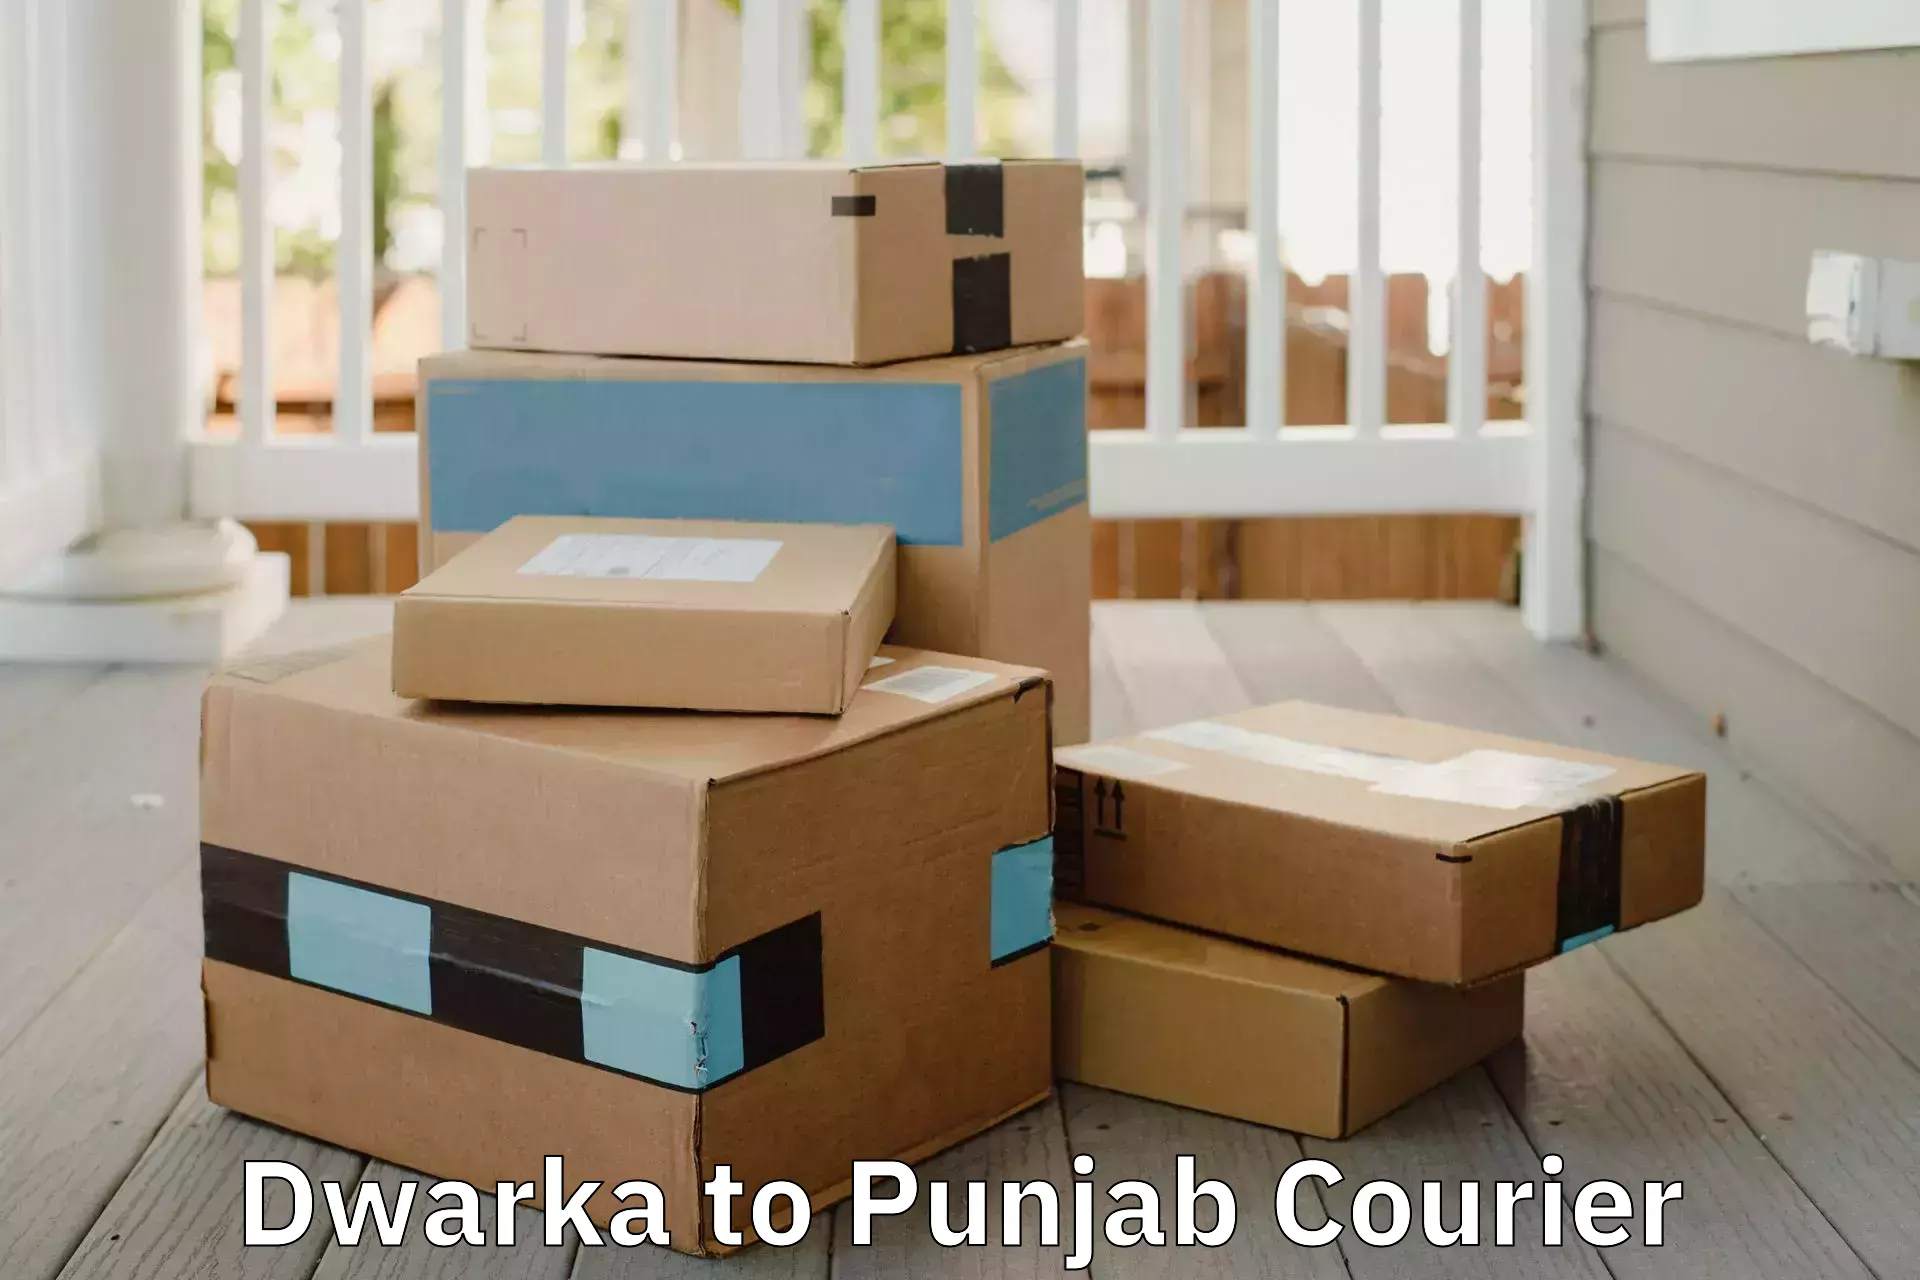 Furniture moving experts Dwarka to Punjab